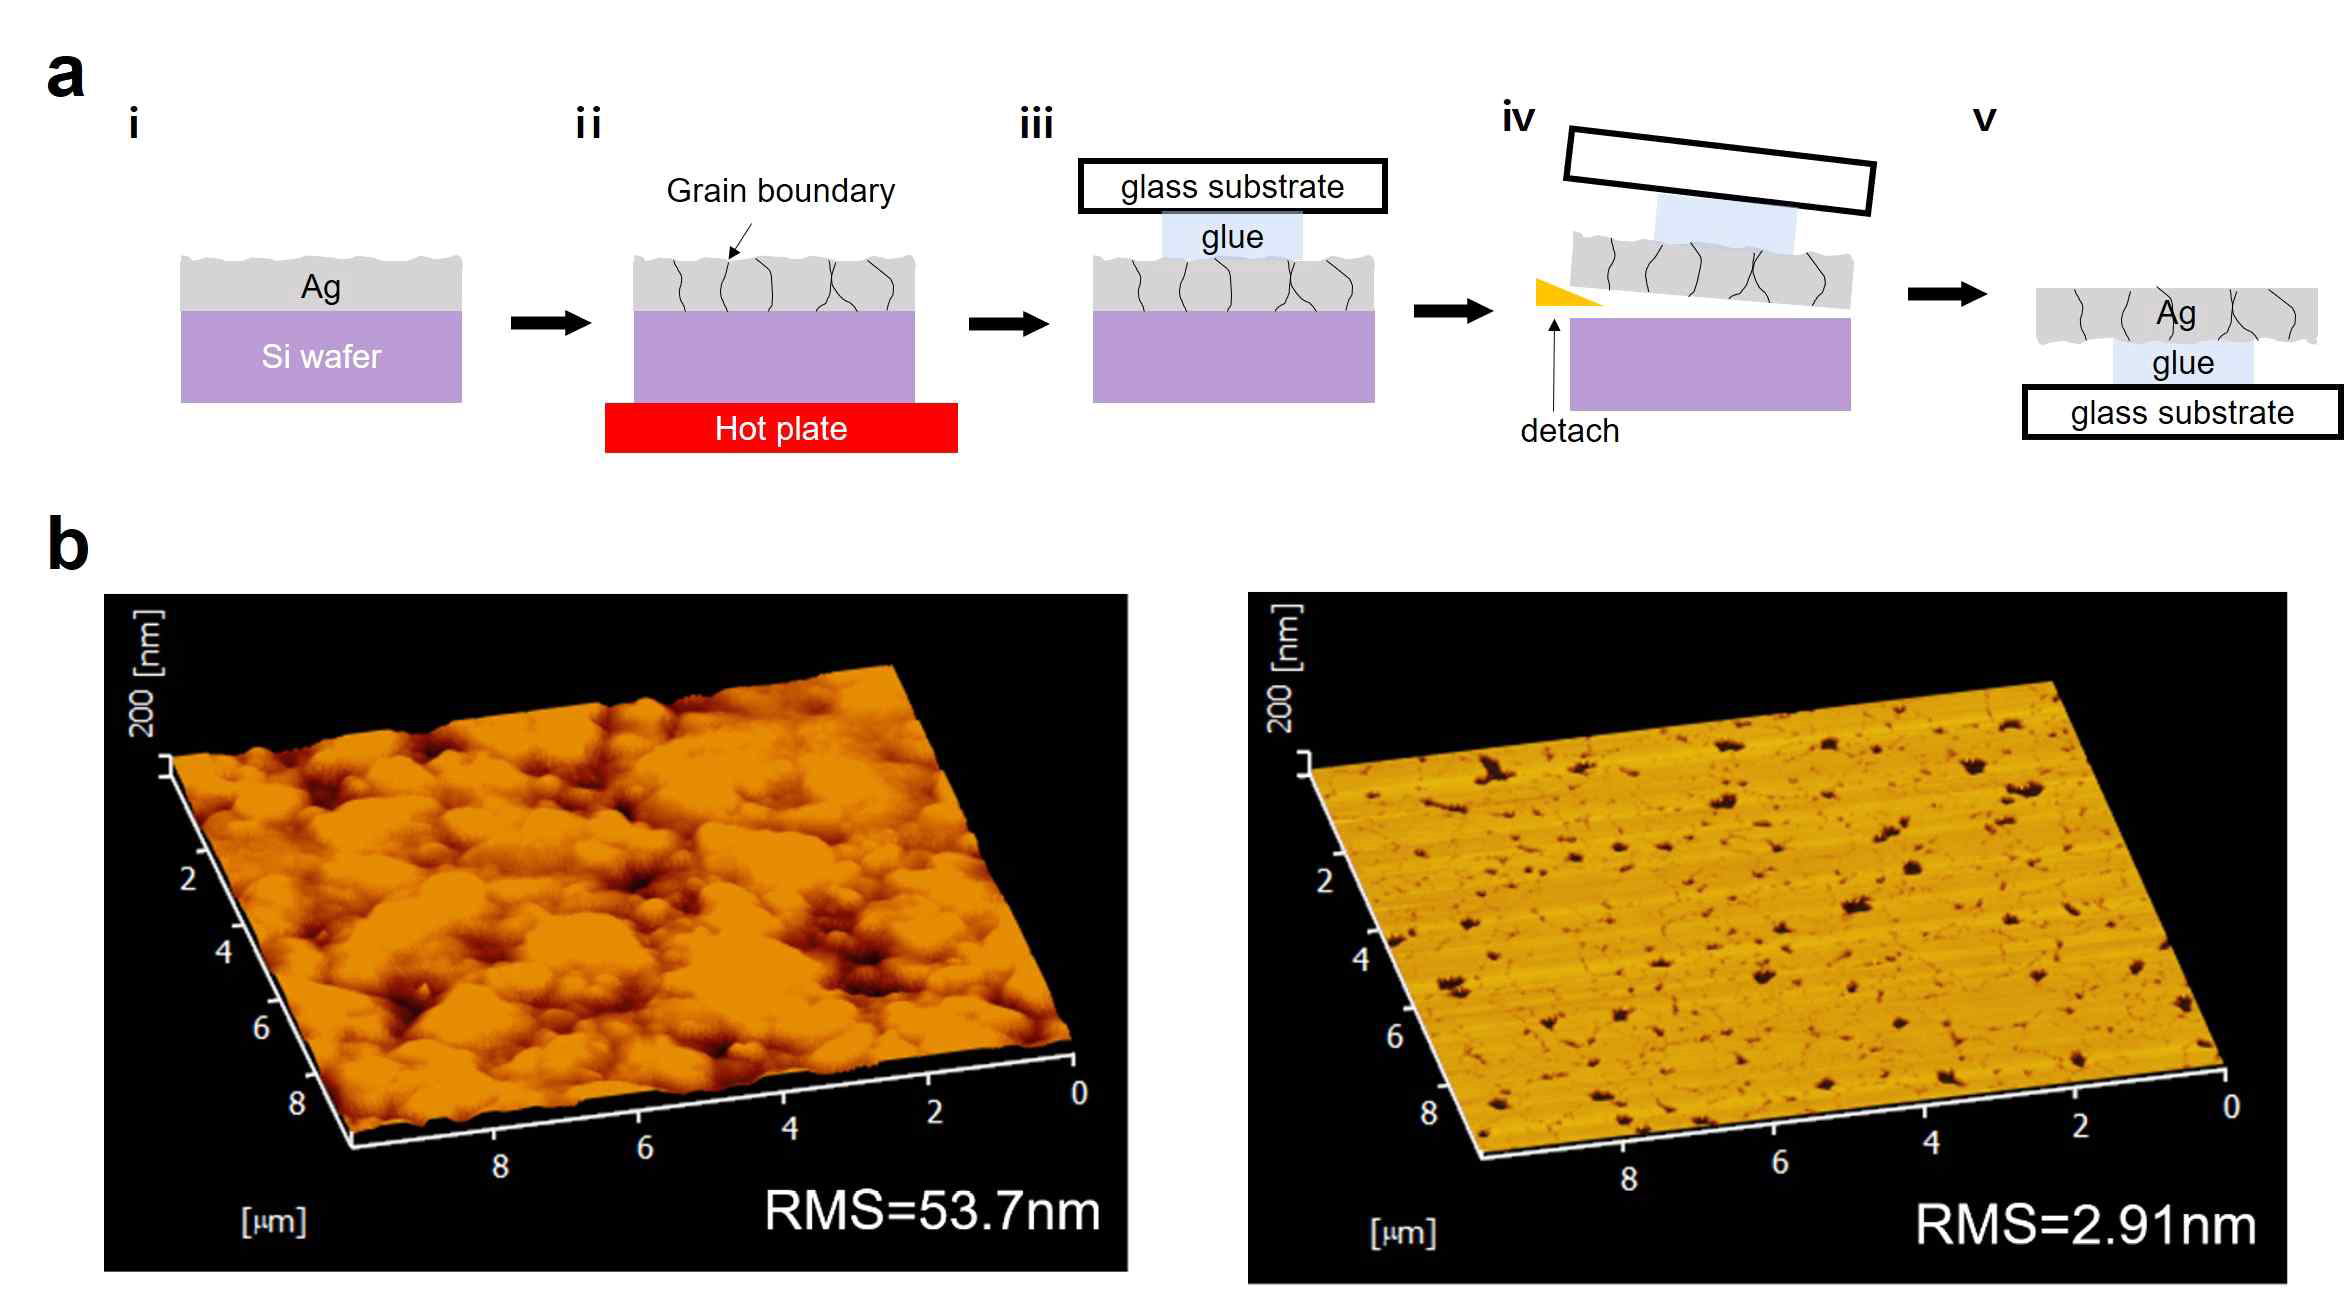 grain boundary와 nanogroove 가 생성된 Ag film의 제작 메커니즘과 표면 거칠기의 차이